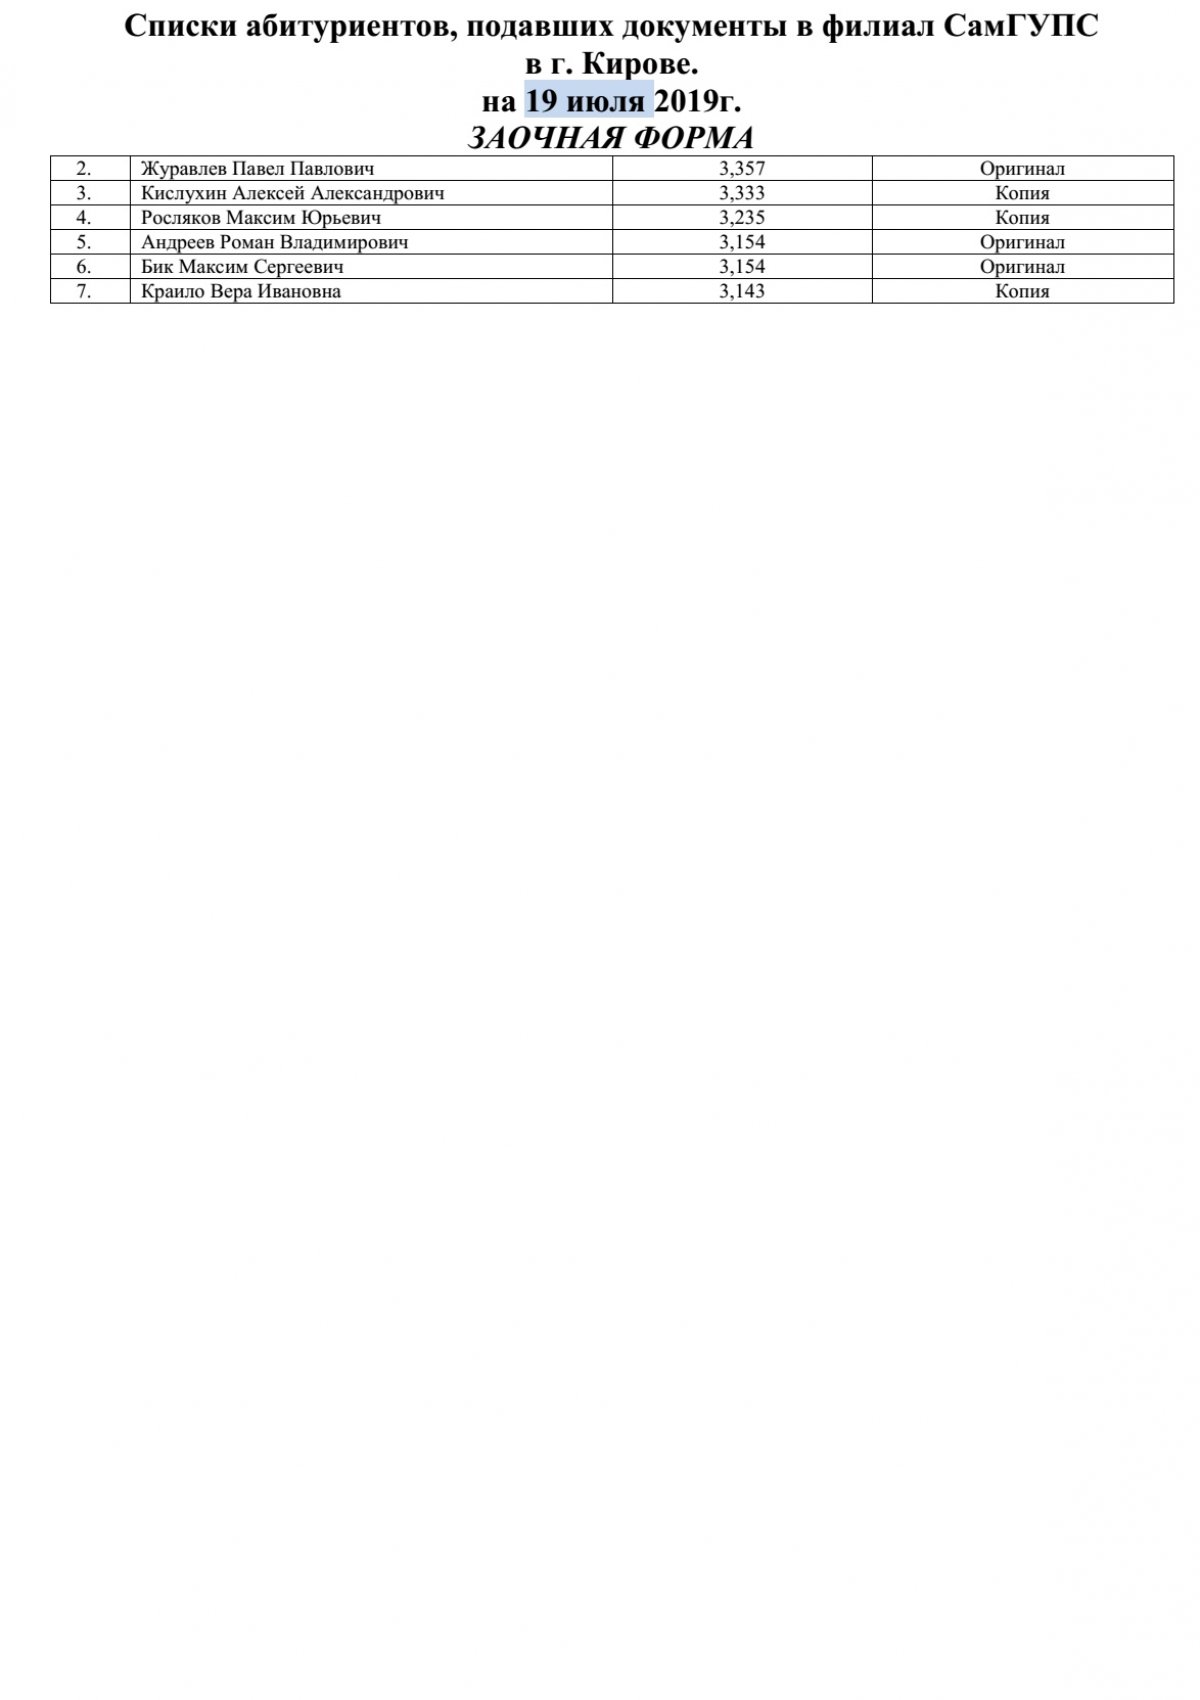 Списки абитуриентов заочного отделения, подавших документы в филиал СамГУПС в г. Кирове на 19 июля